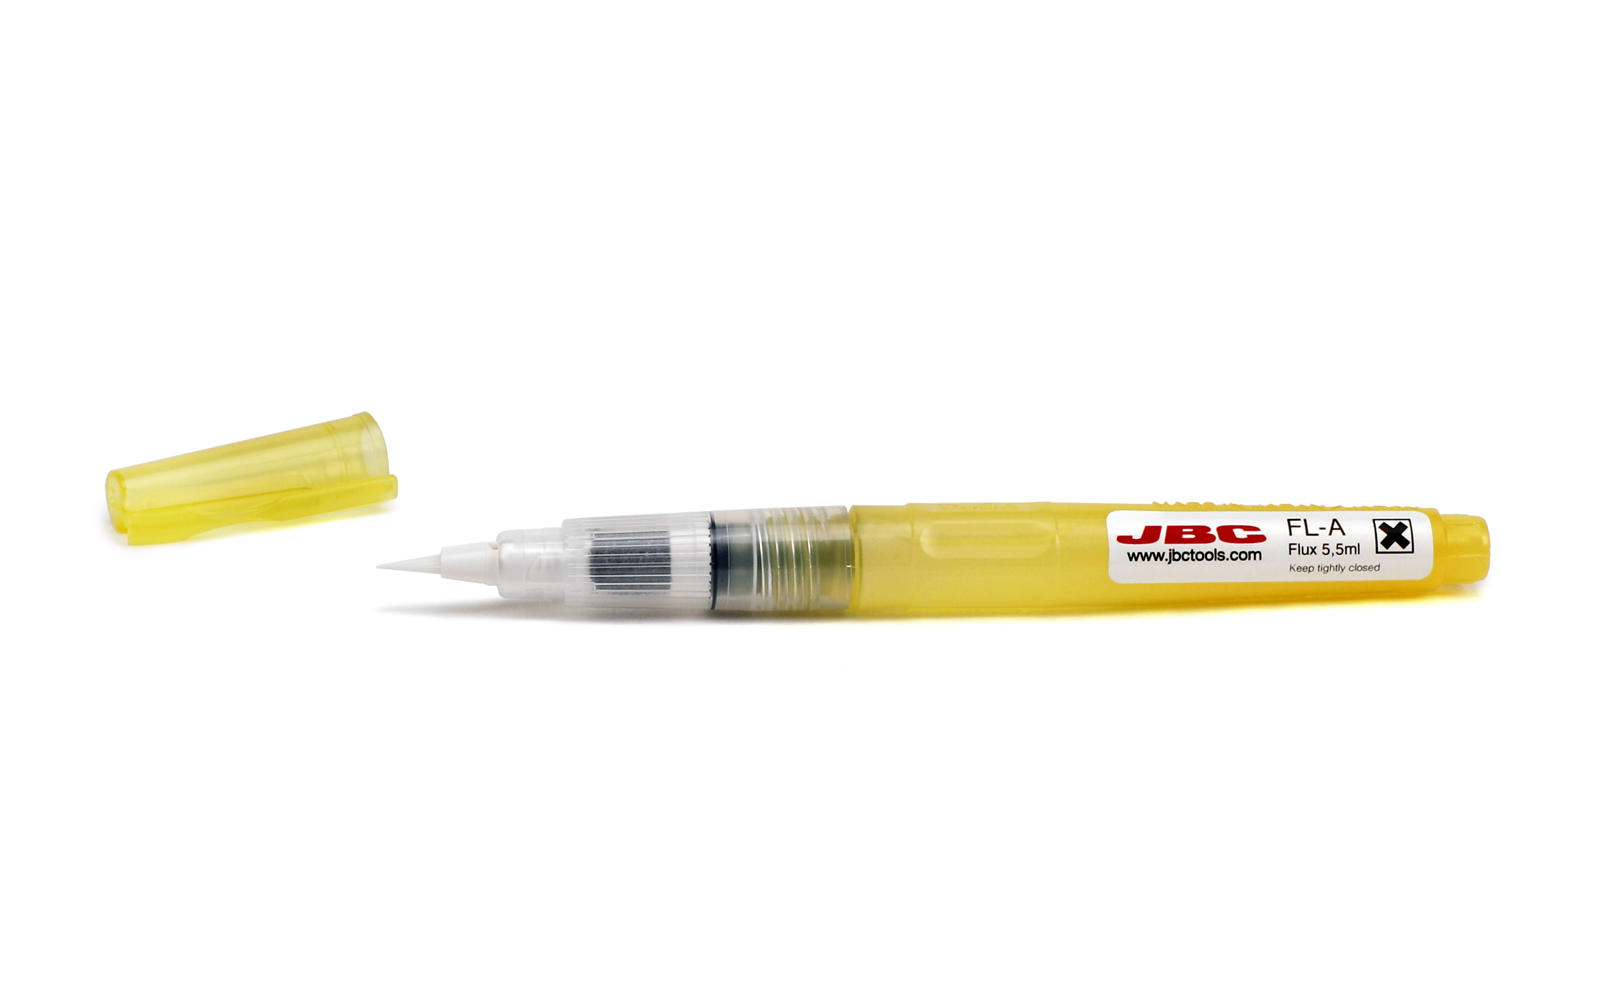 FL-A - Refilable Brush Pen for Flux